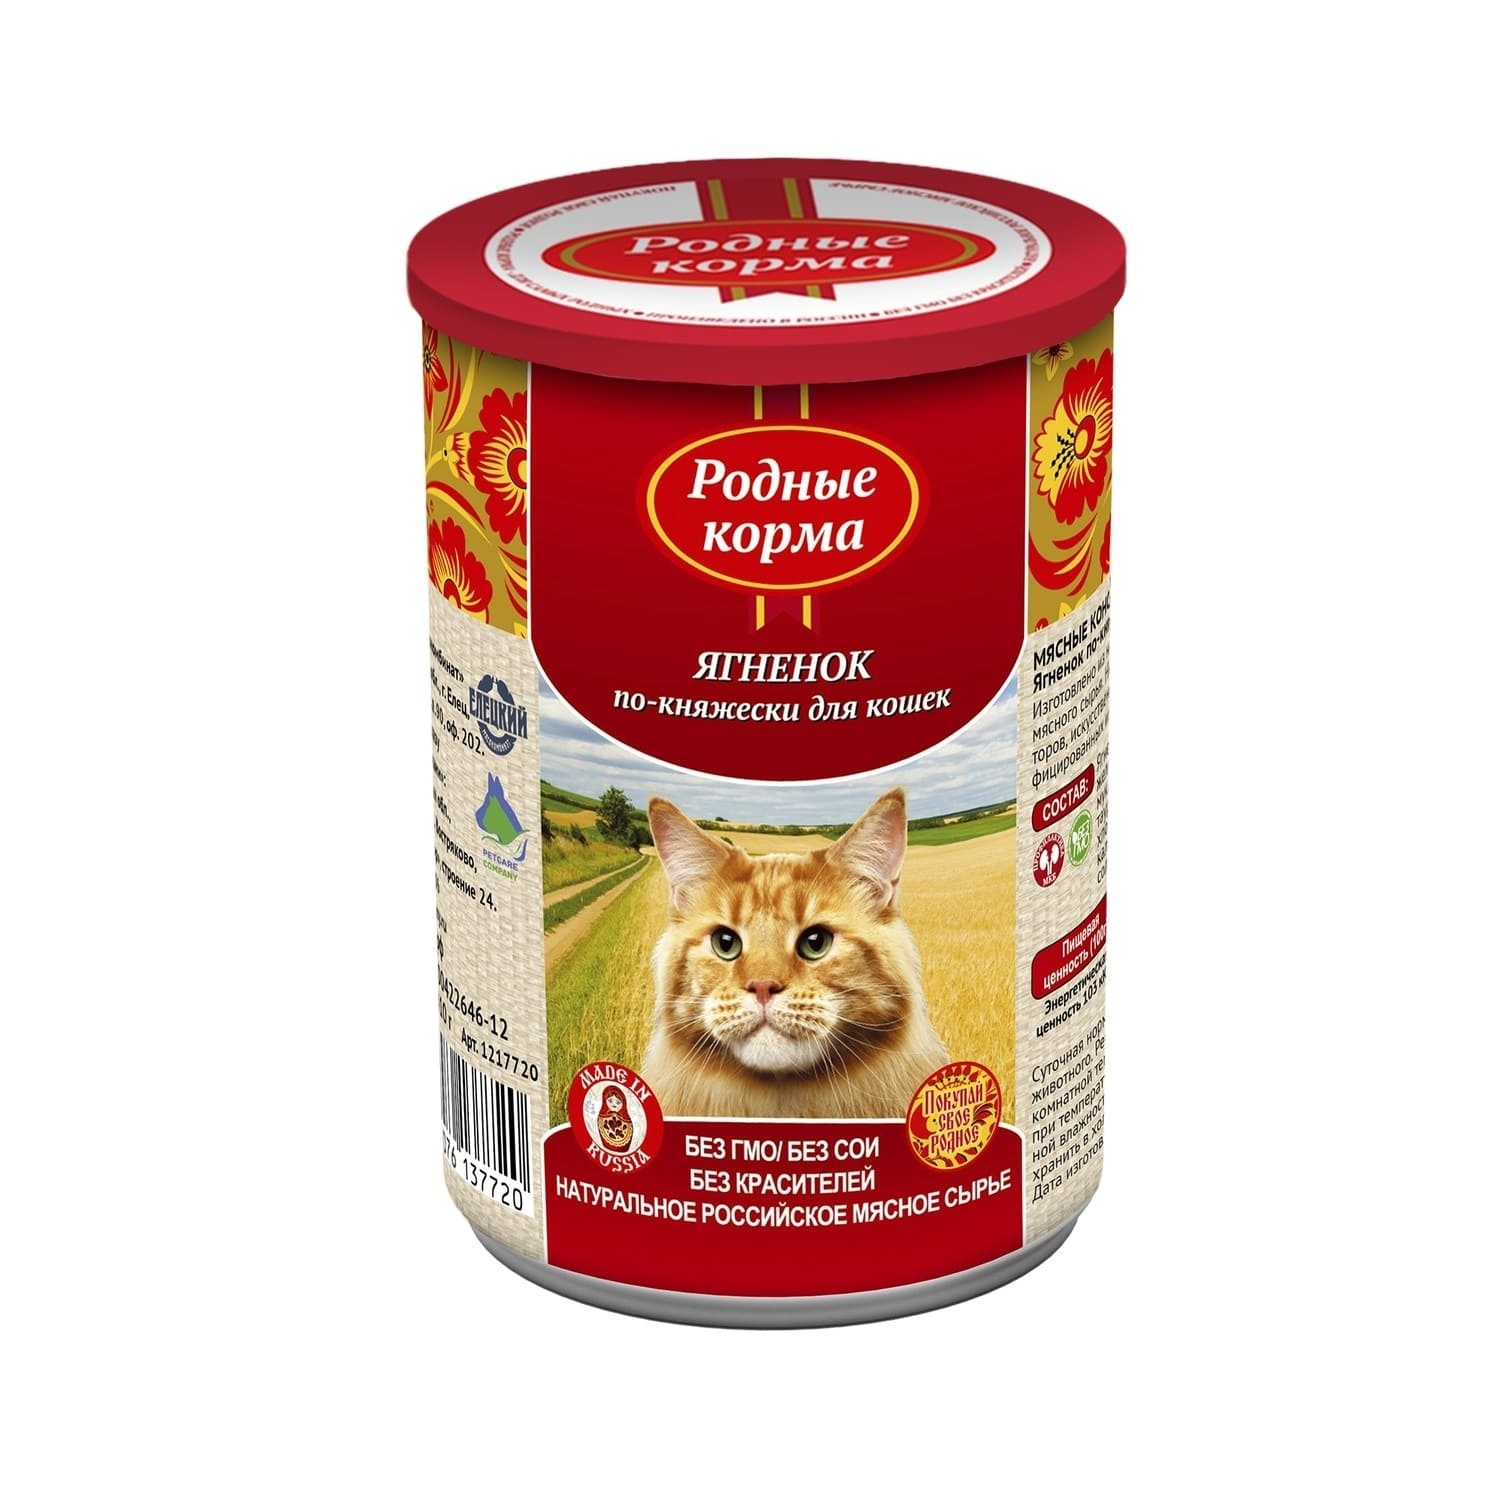 Родные корма Родные корма консервы для кошек, ягненок по-княжески (410 г)